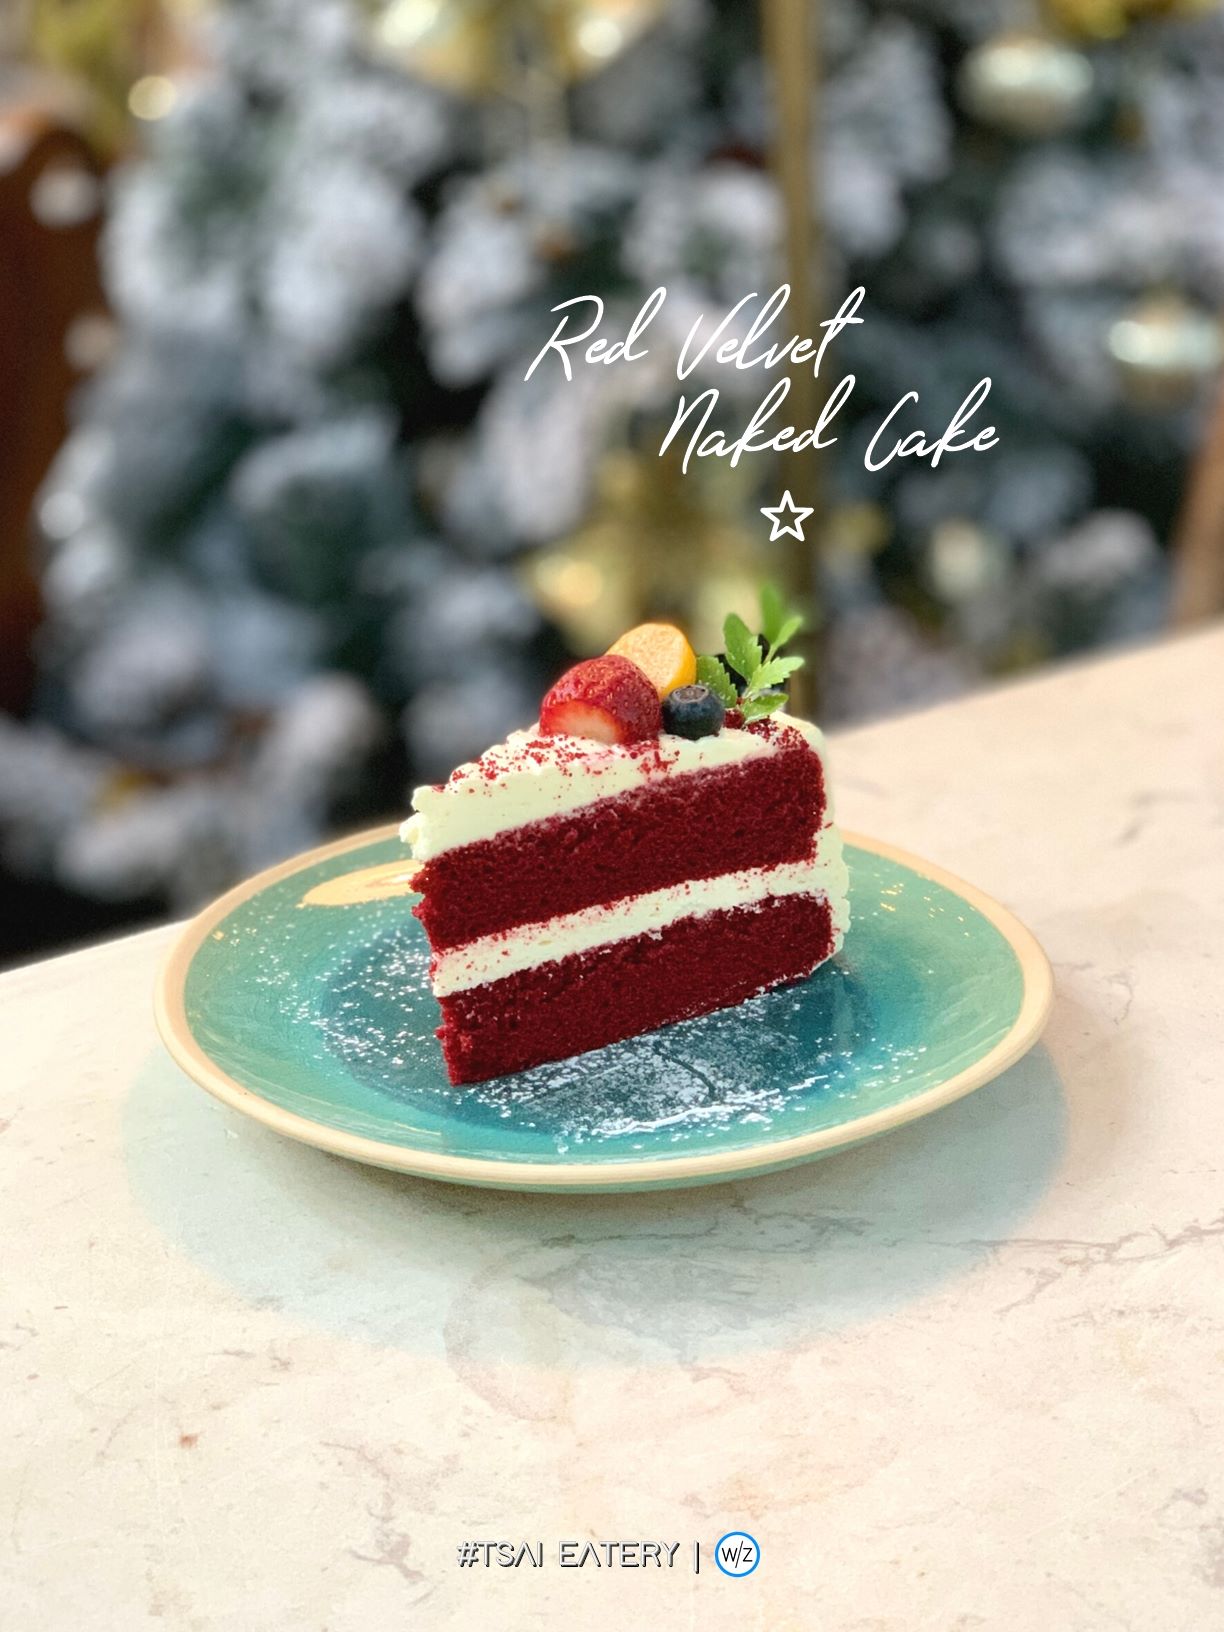 TEBS - RED VELVET NAKED CAKE